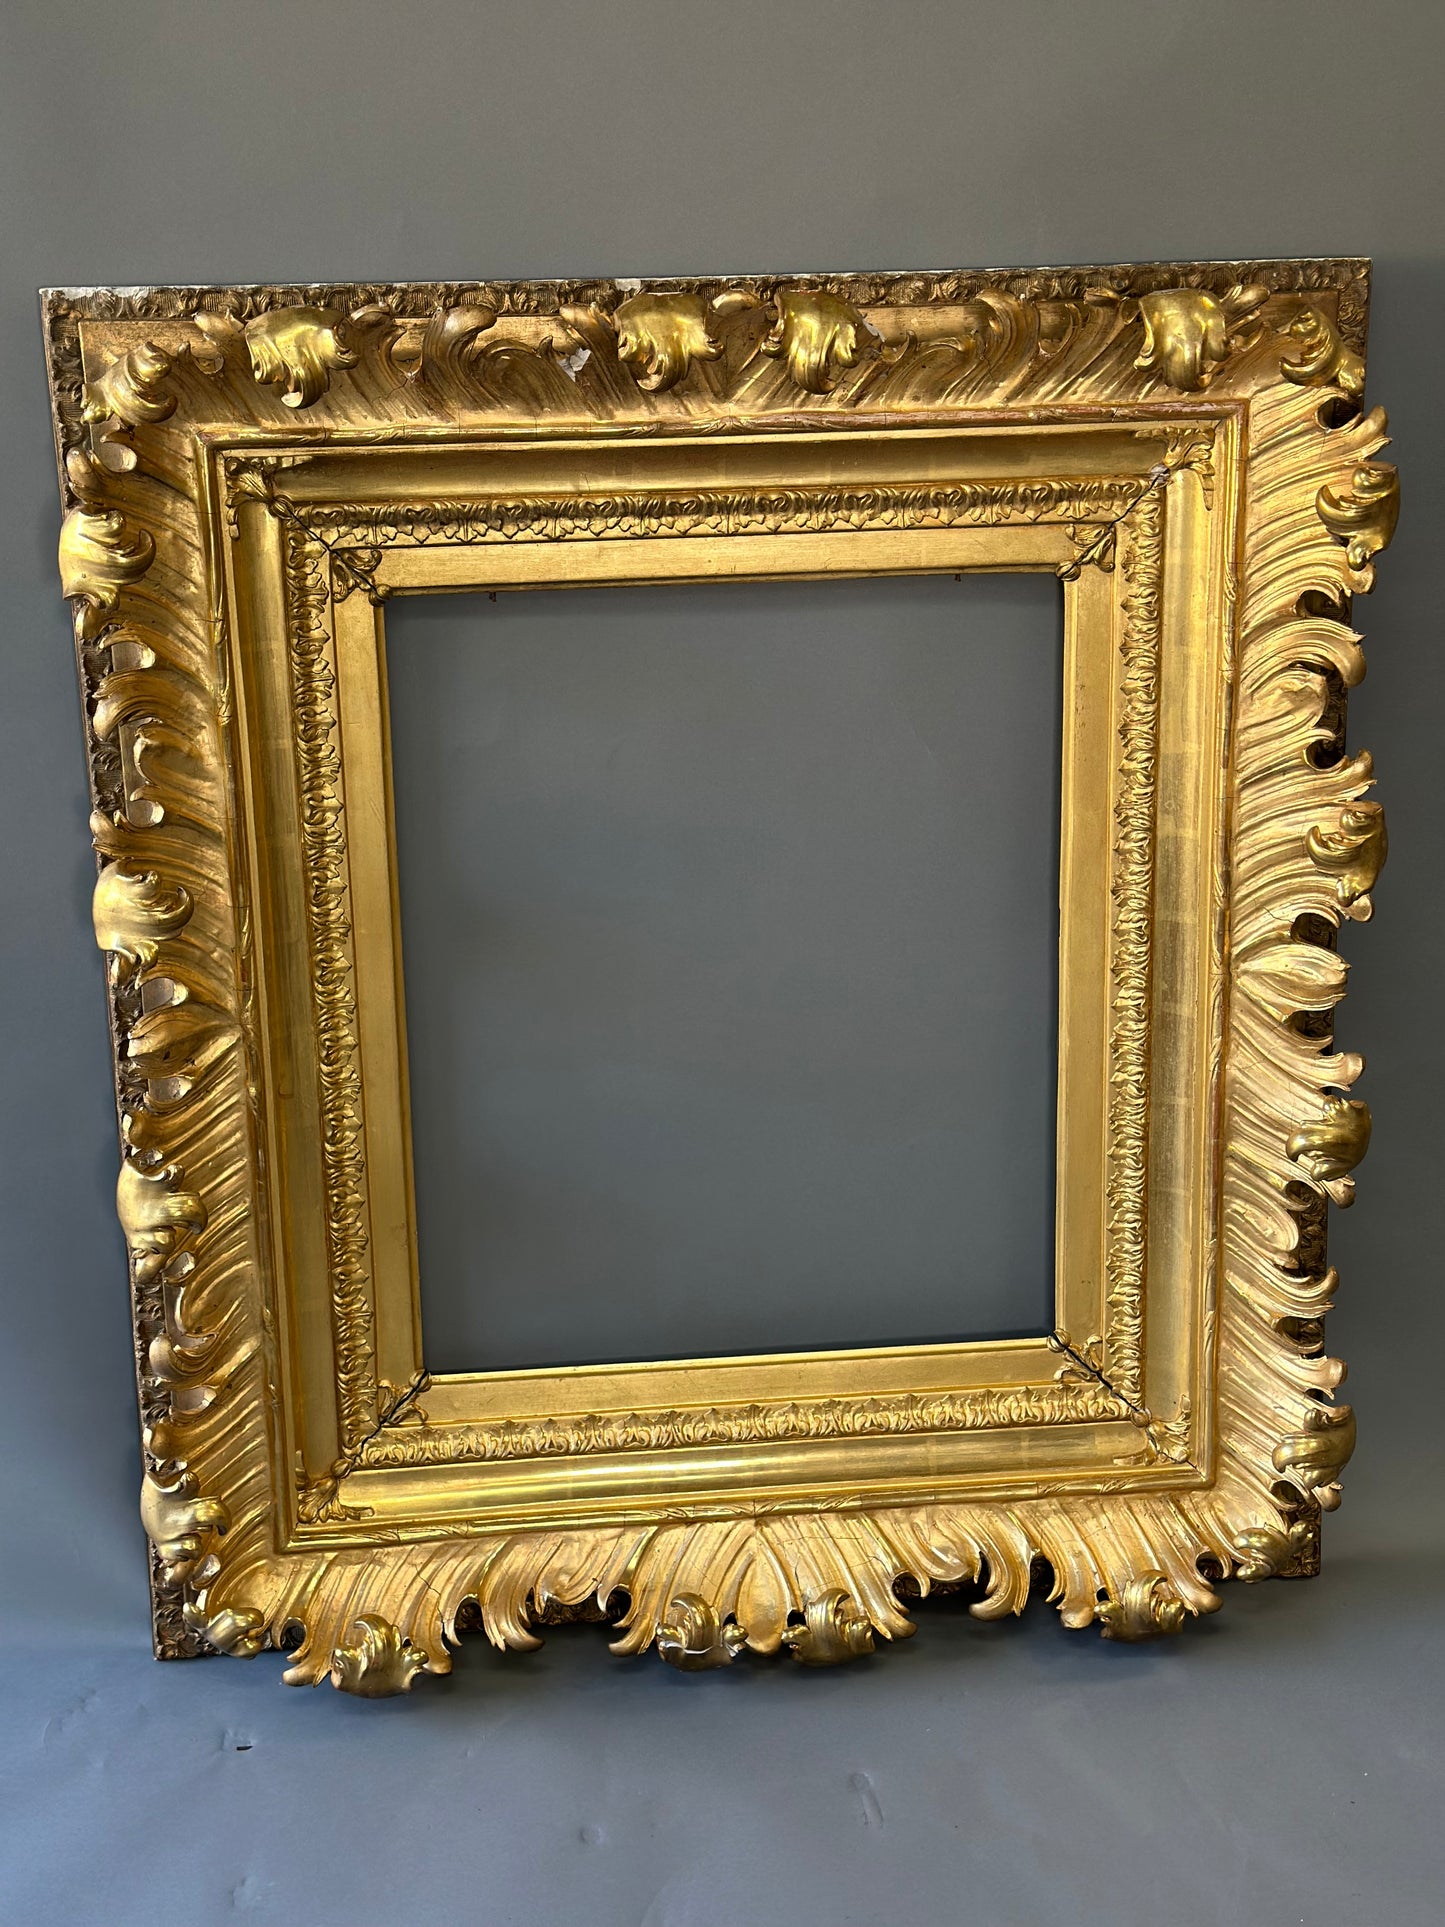 SOLD **Plaster Gold Gilt Frame - Italian